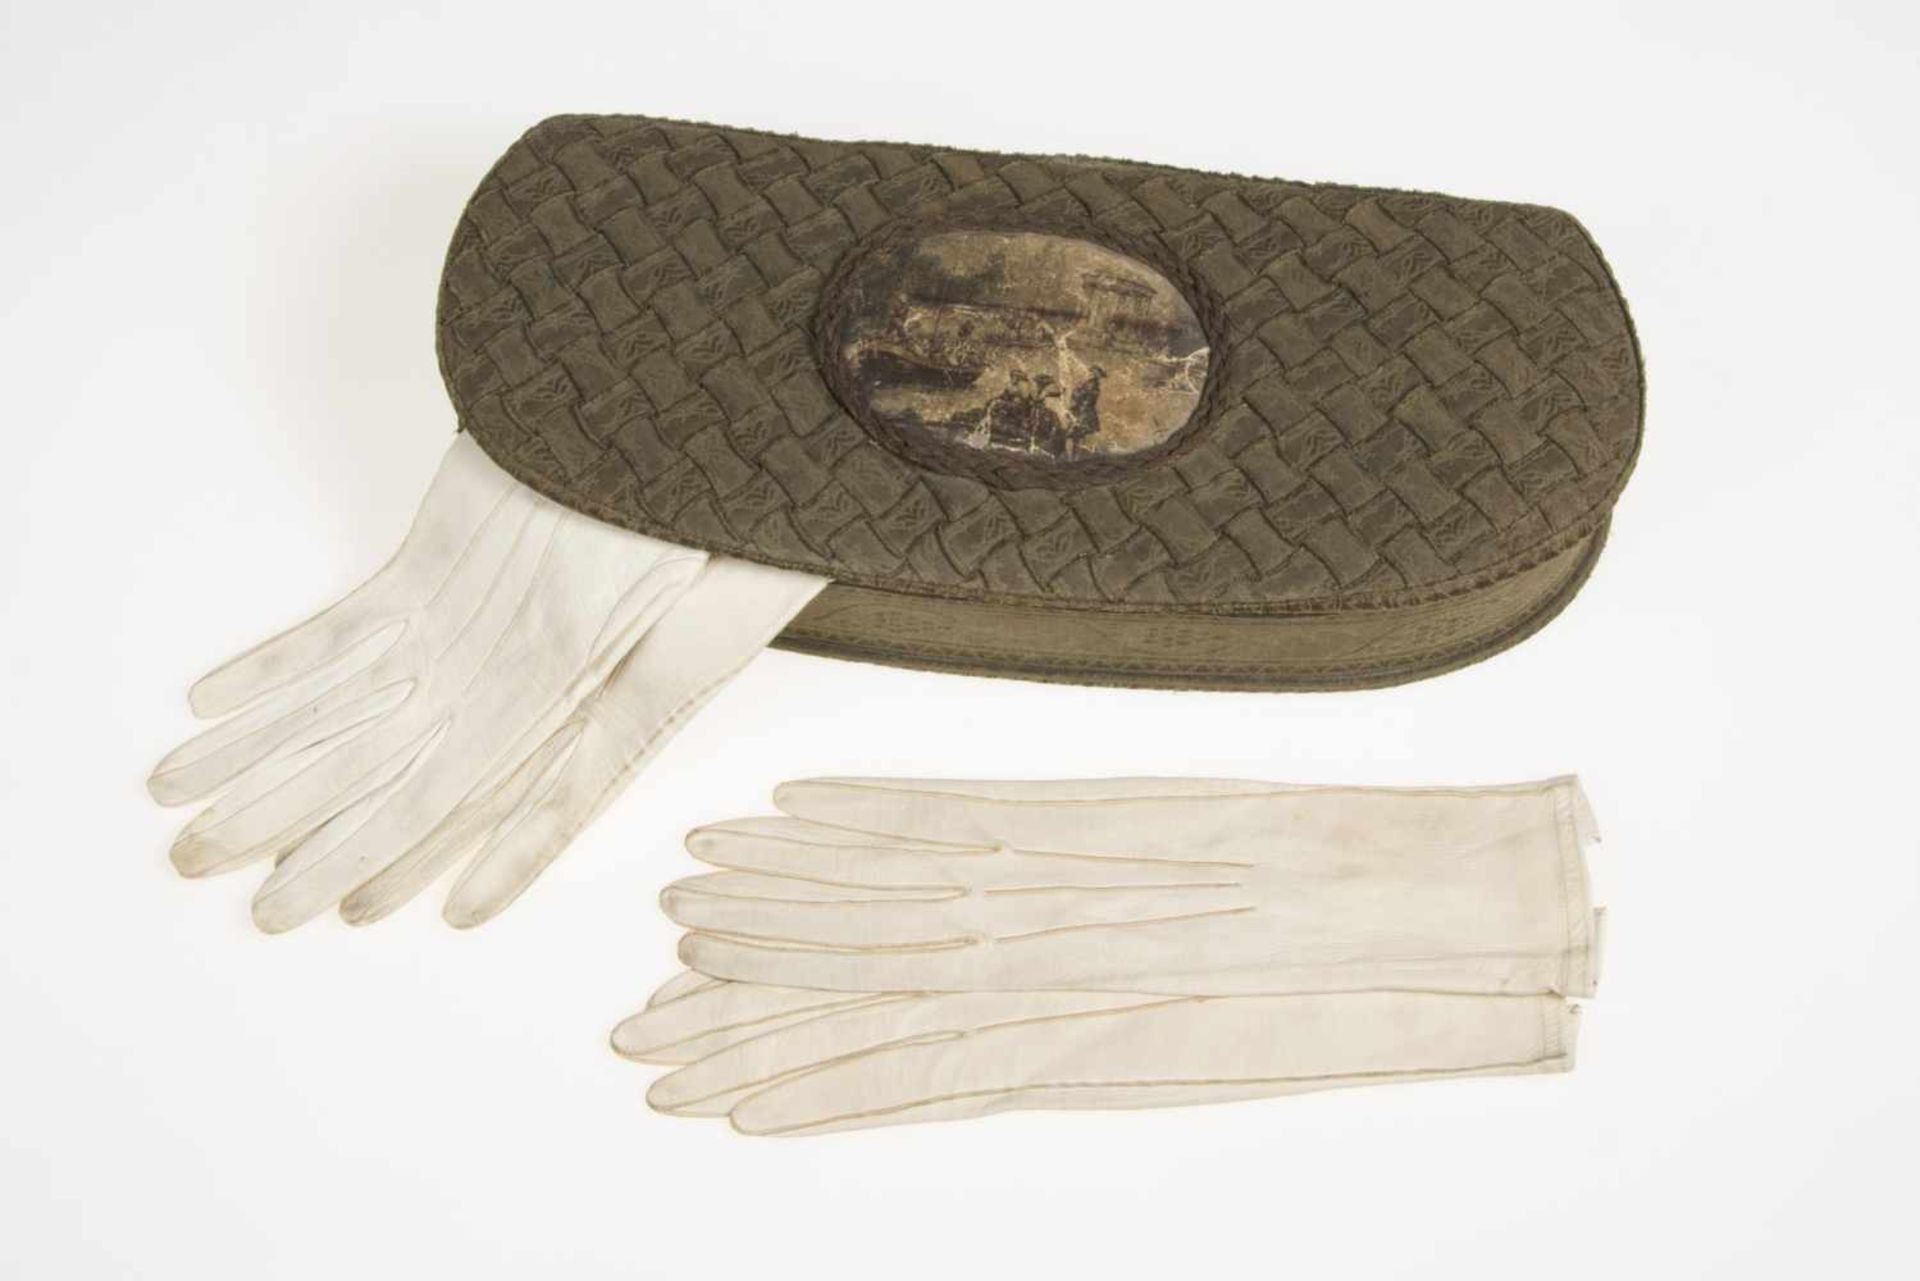 Handschuhschachtel mit olivgrünem Stoff überzogen, im Mittel ein Medaillon, 7 Paar